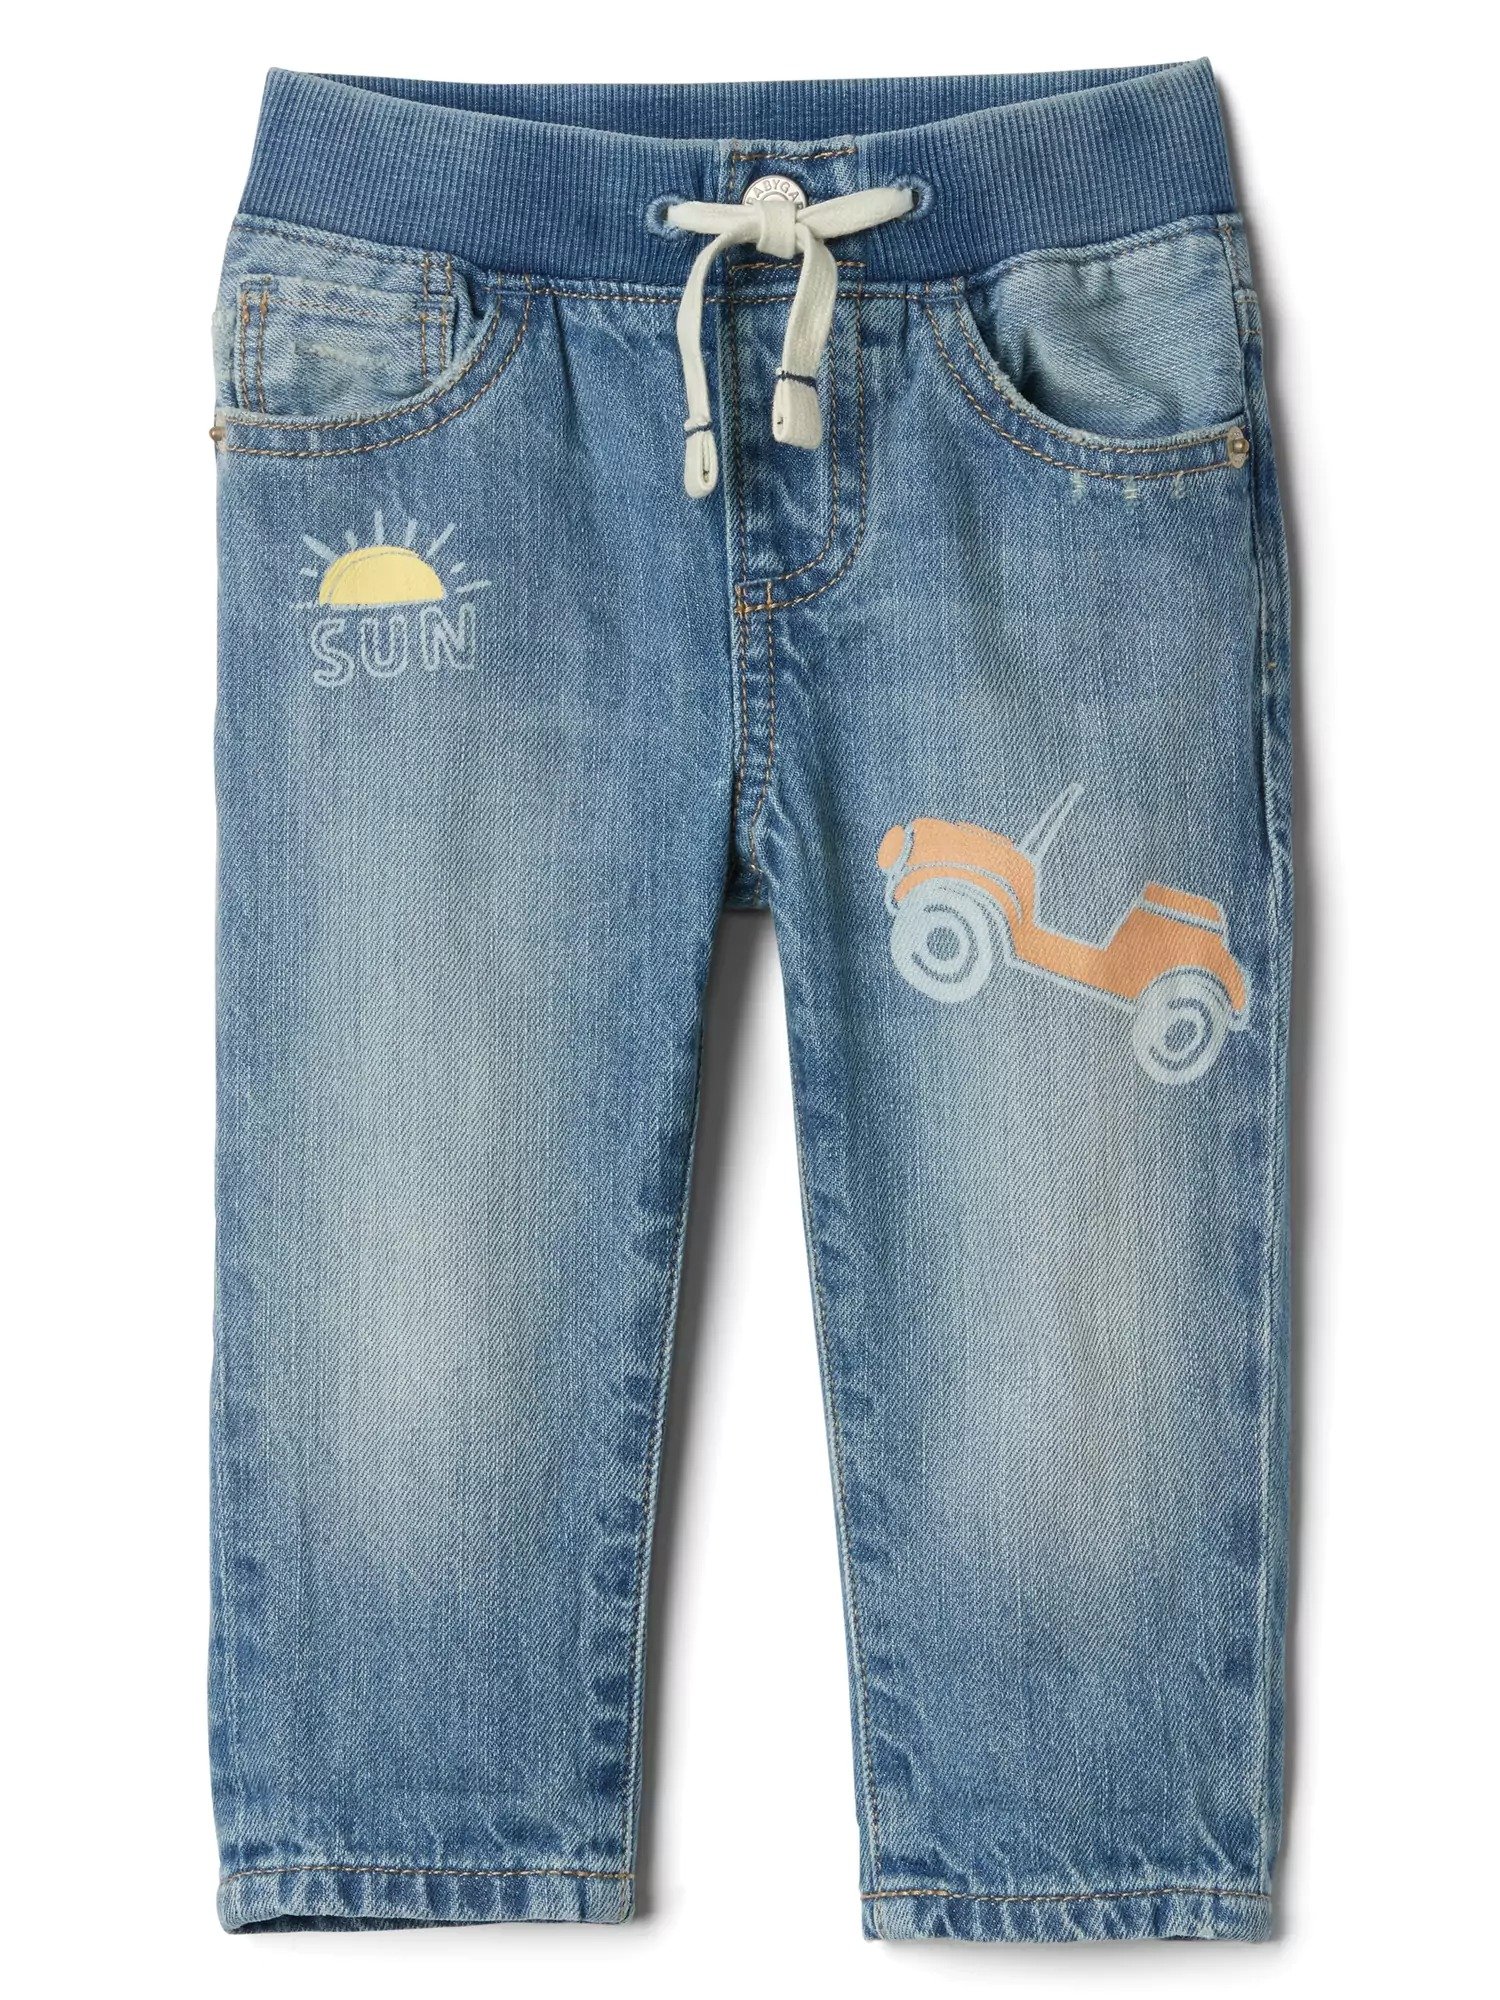 Grafik desenli easy slim fit jean pantolon product image